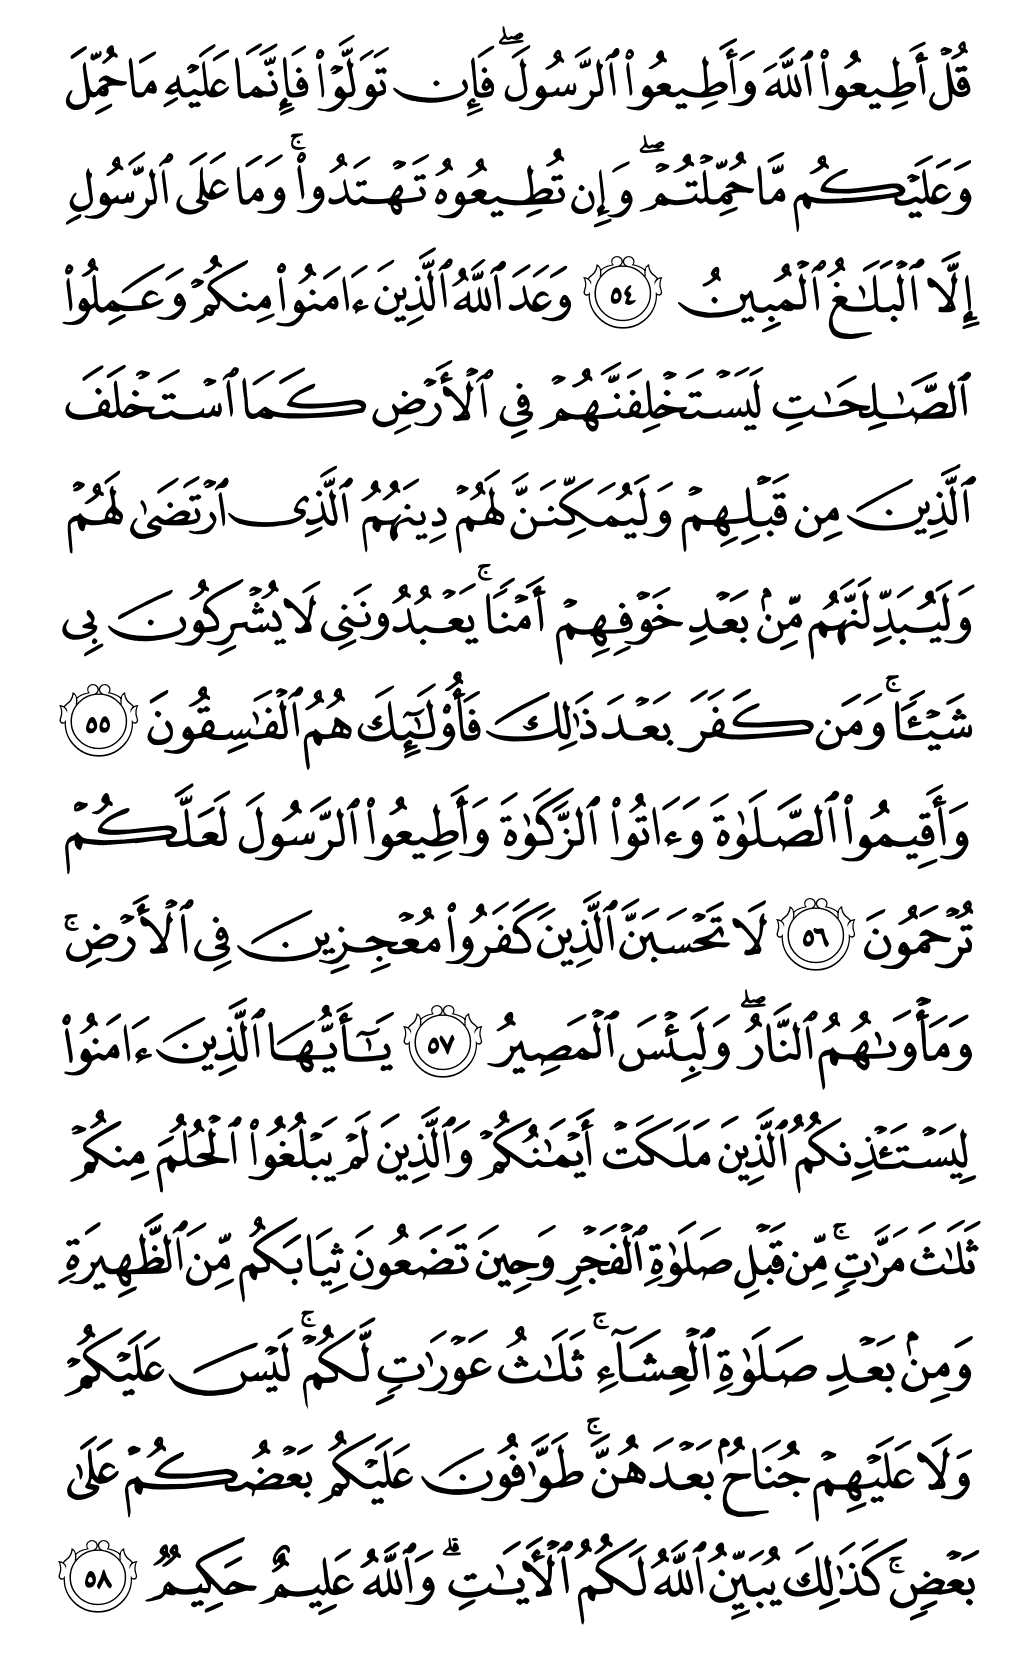 الصفحة رقم 357 من القرآن الكريم